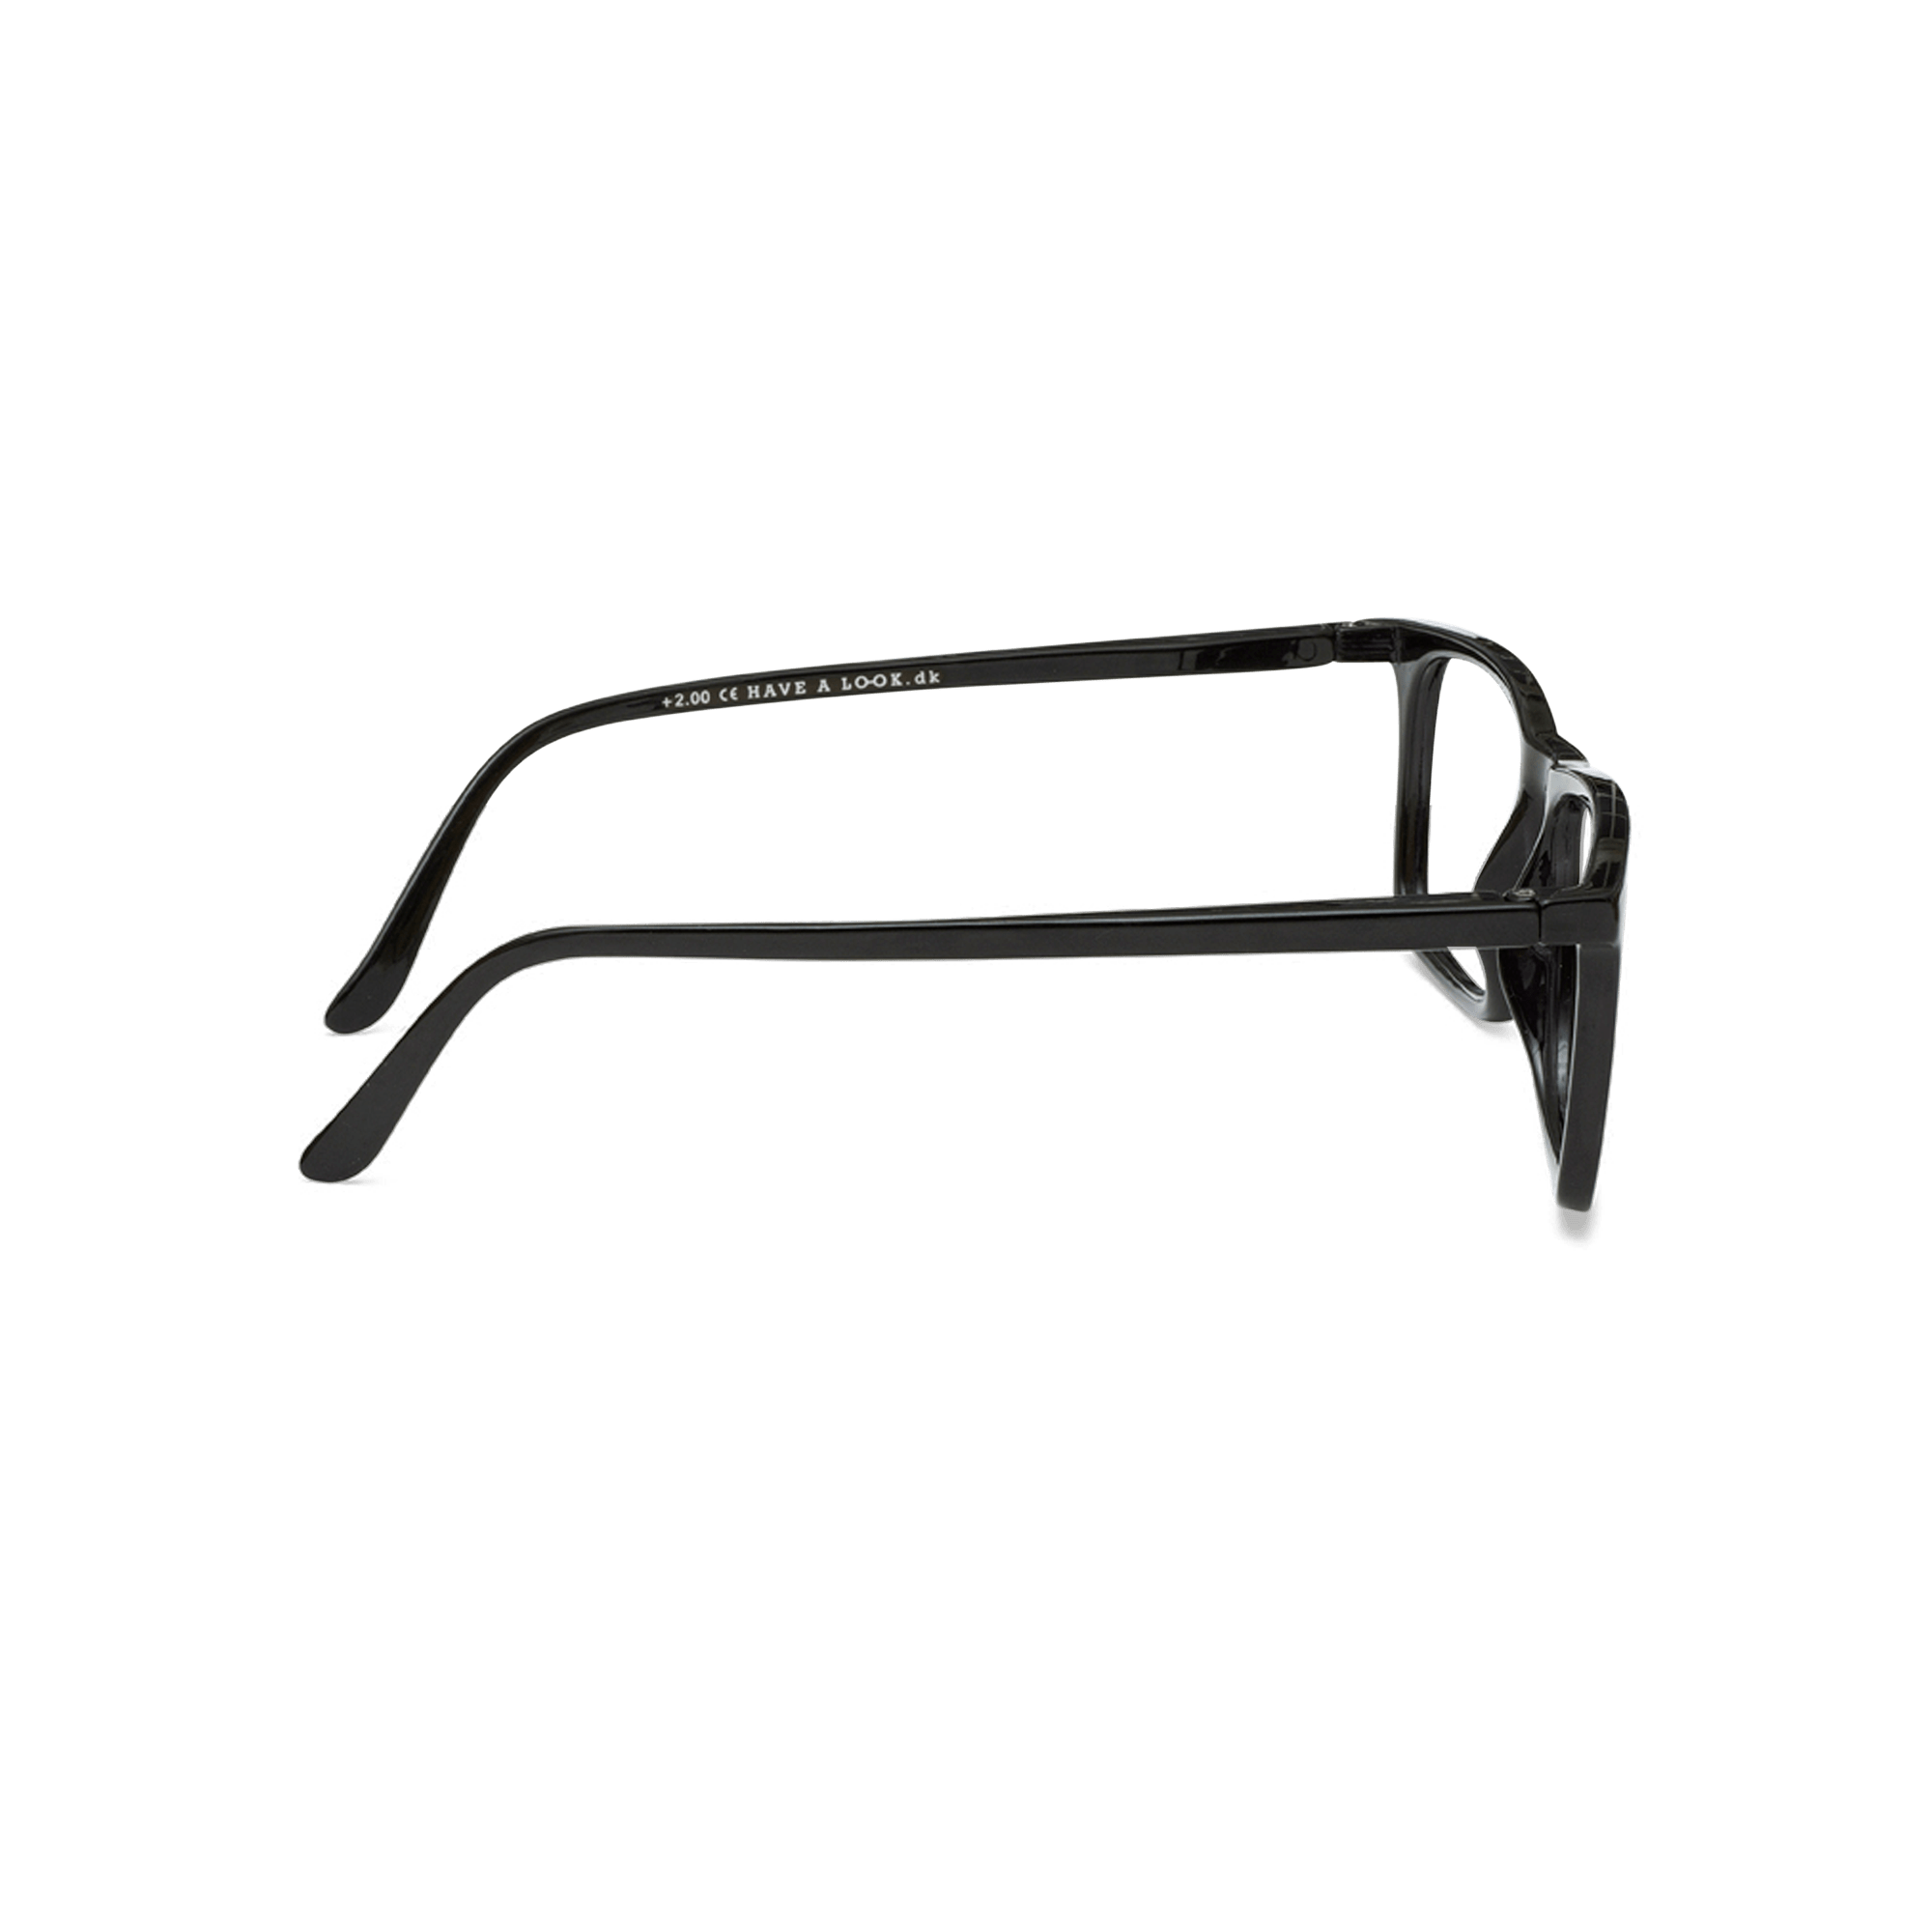 Minusbriller Type A - black